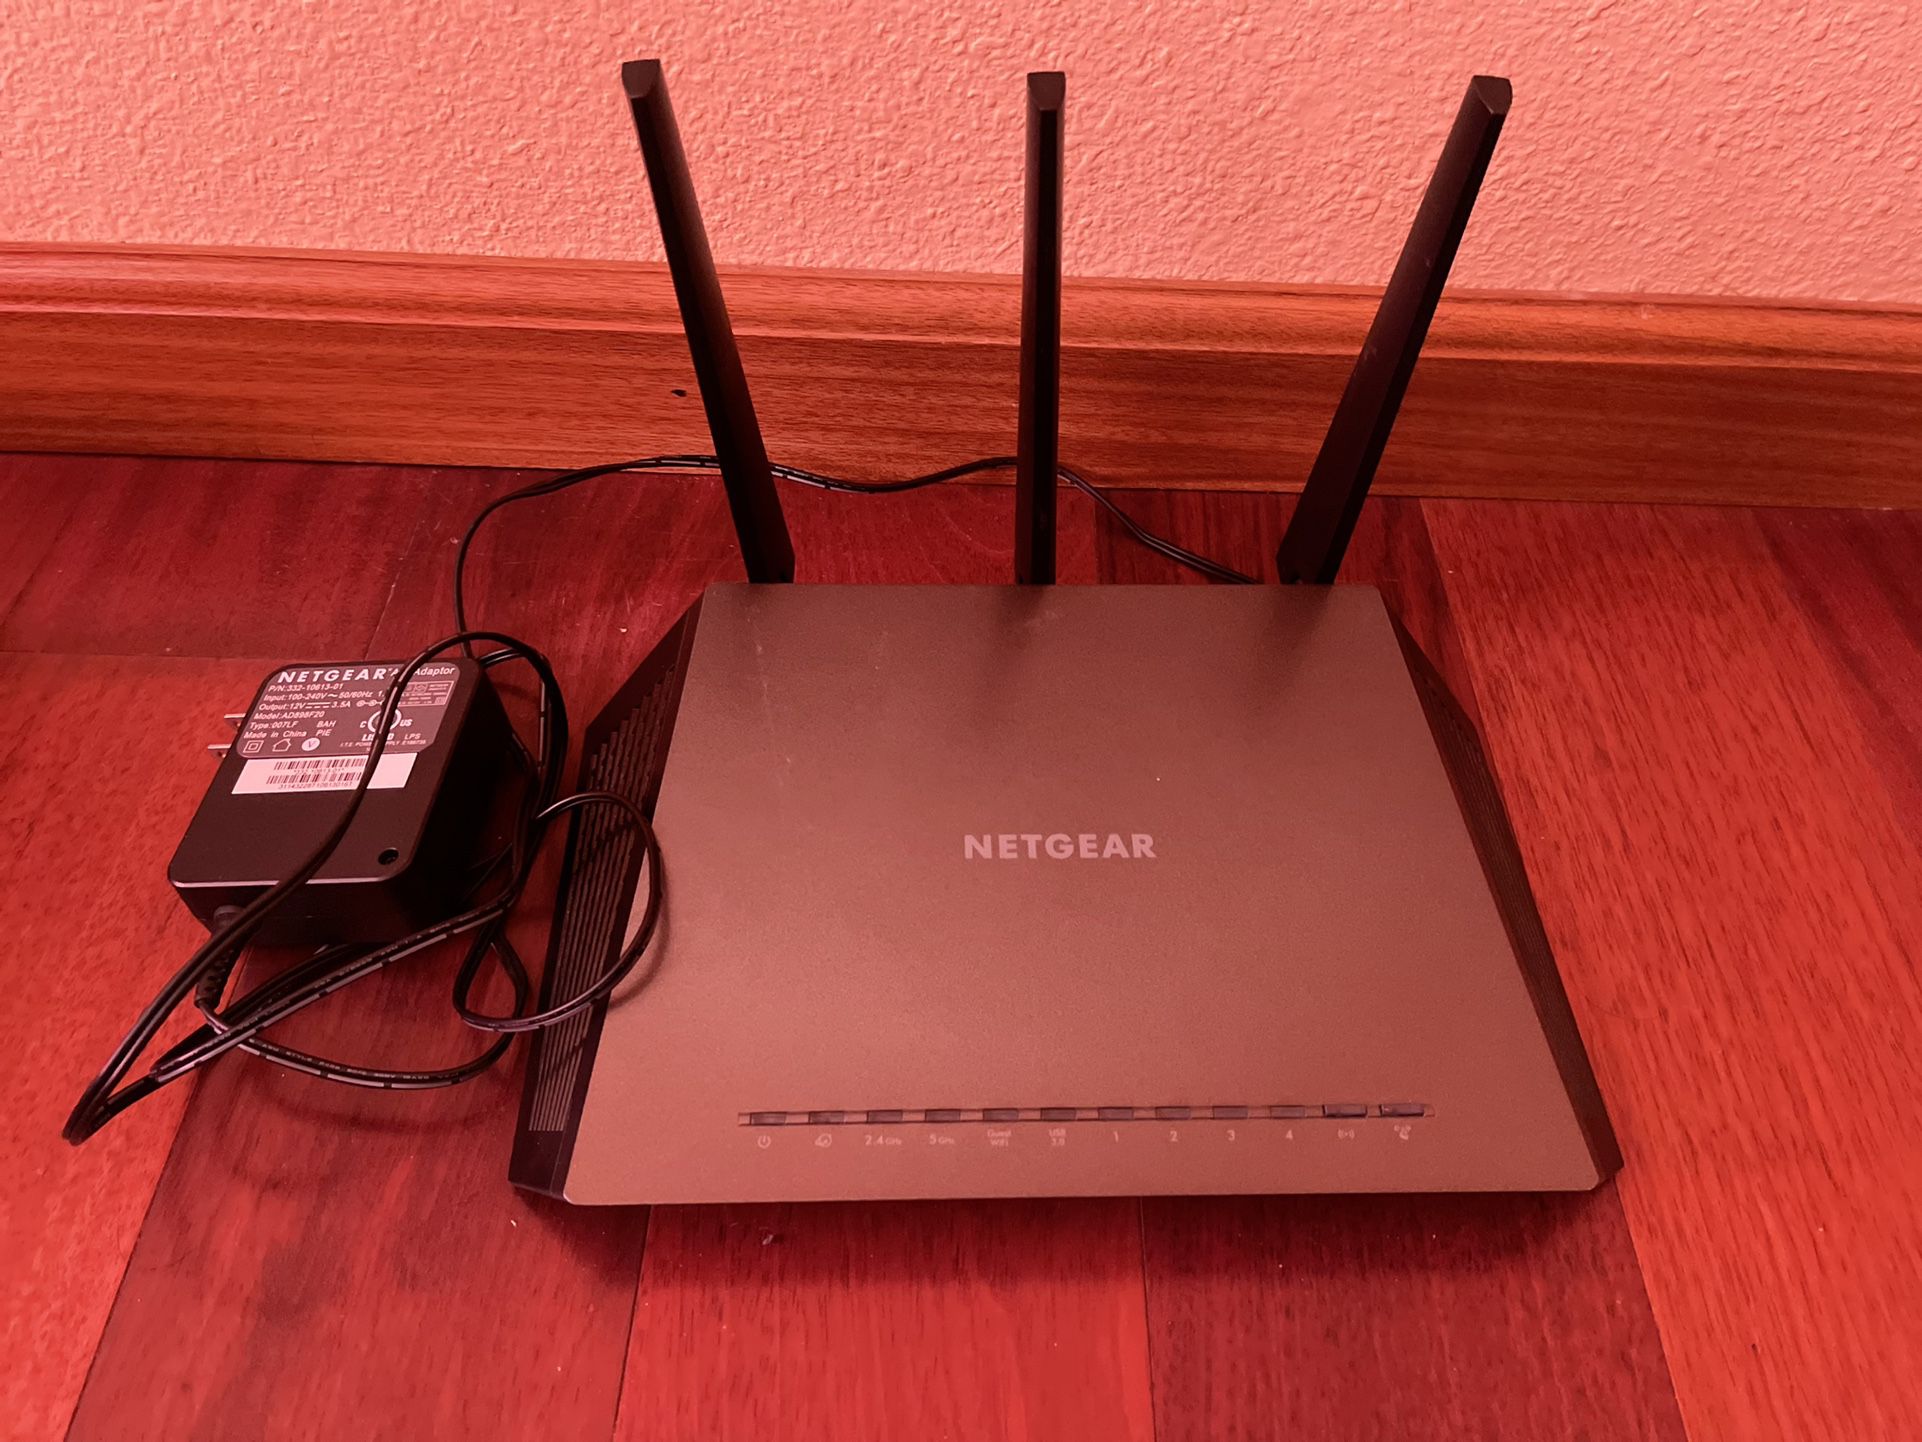 Netgear Nighthawk AC1750 Smart WiFi Router  Model: R6700